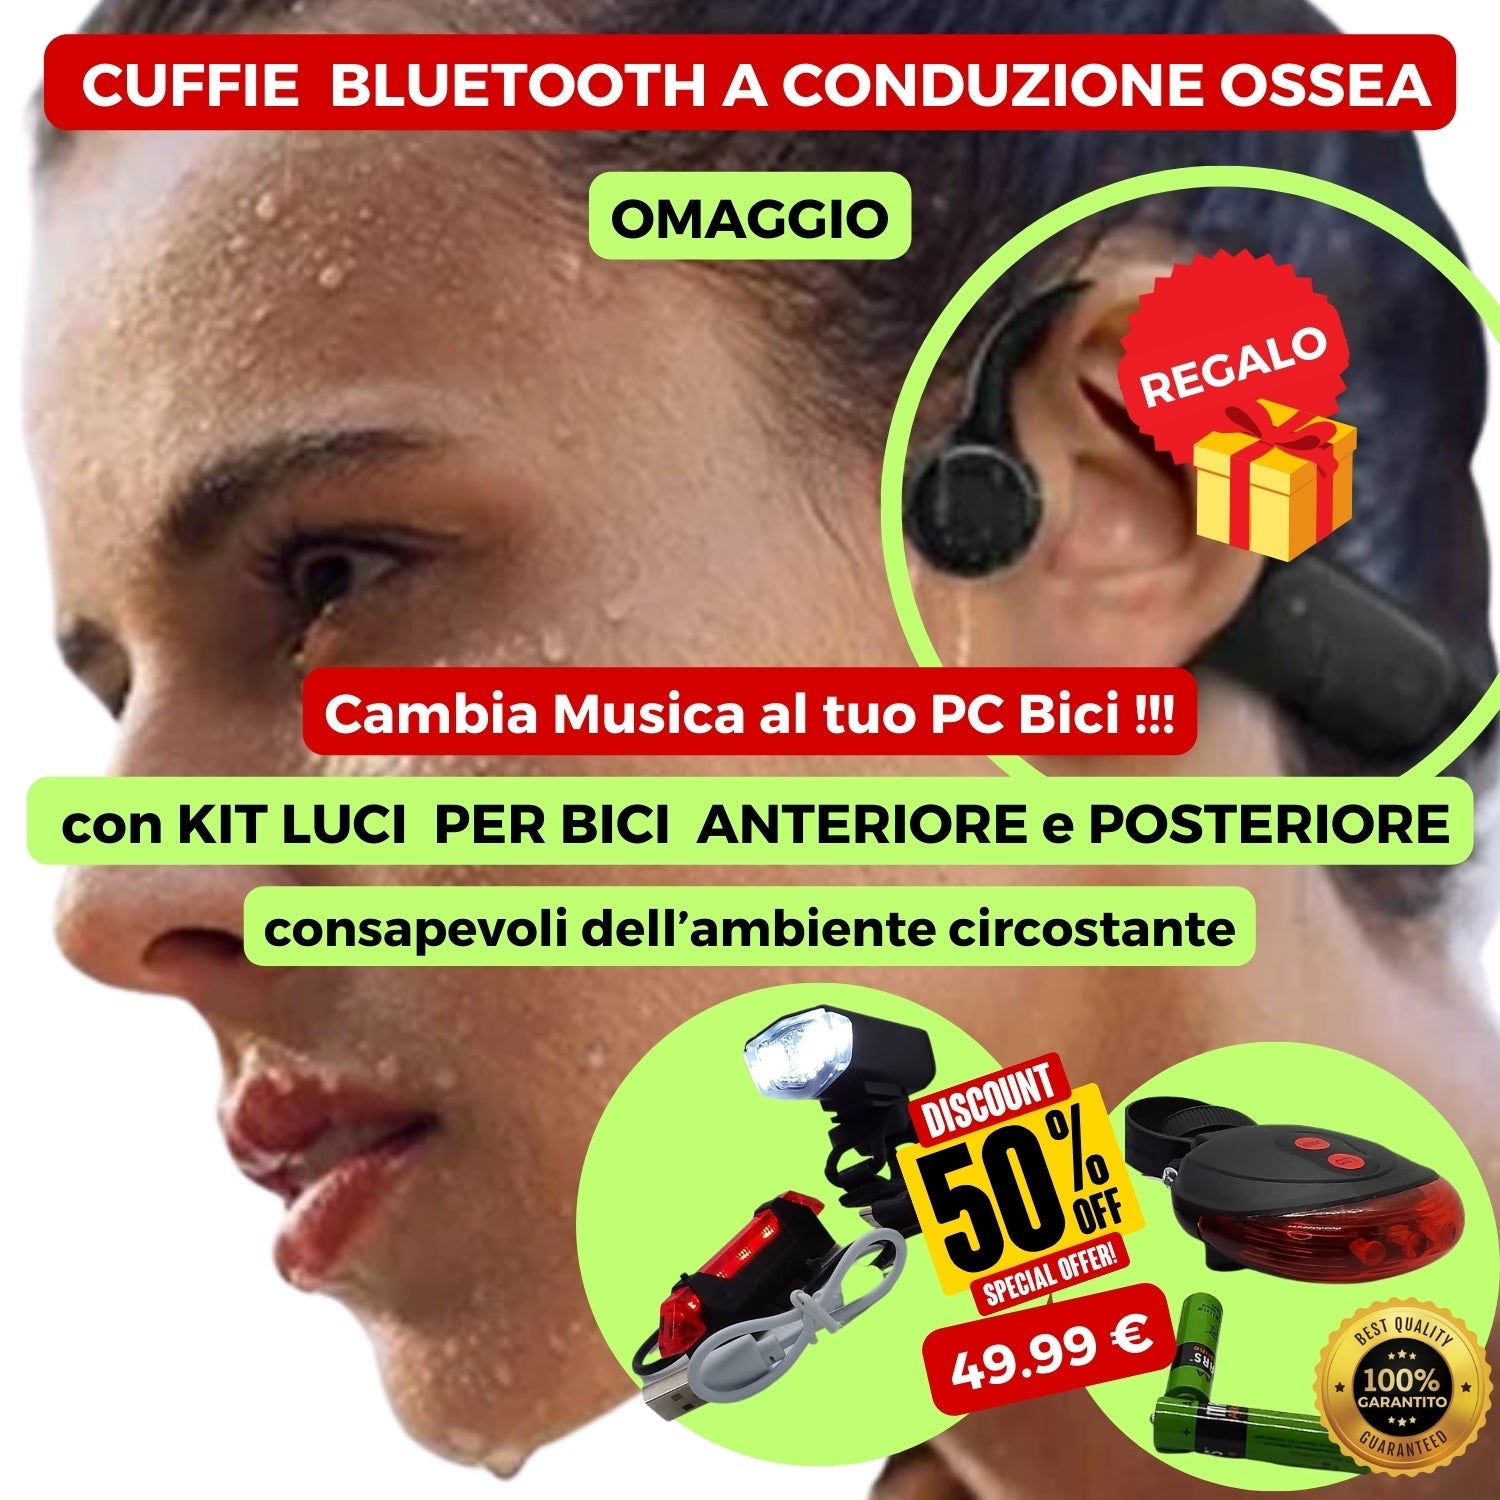 OFFERTA GRATIS Cuffie Wireless Bluetooth a Conduzione Ossea con KIT LUCI per Bici e Monopattino : Luce Posteriore+Anteriore.